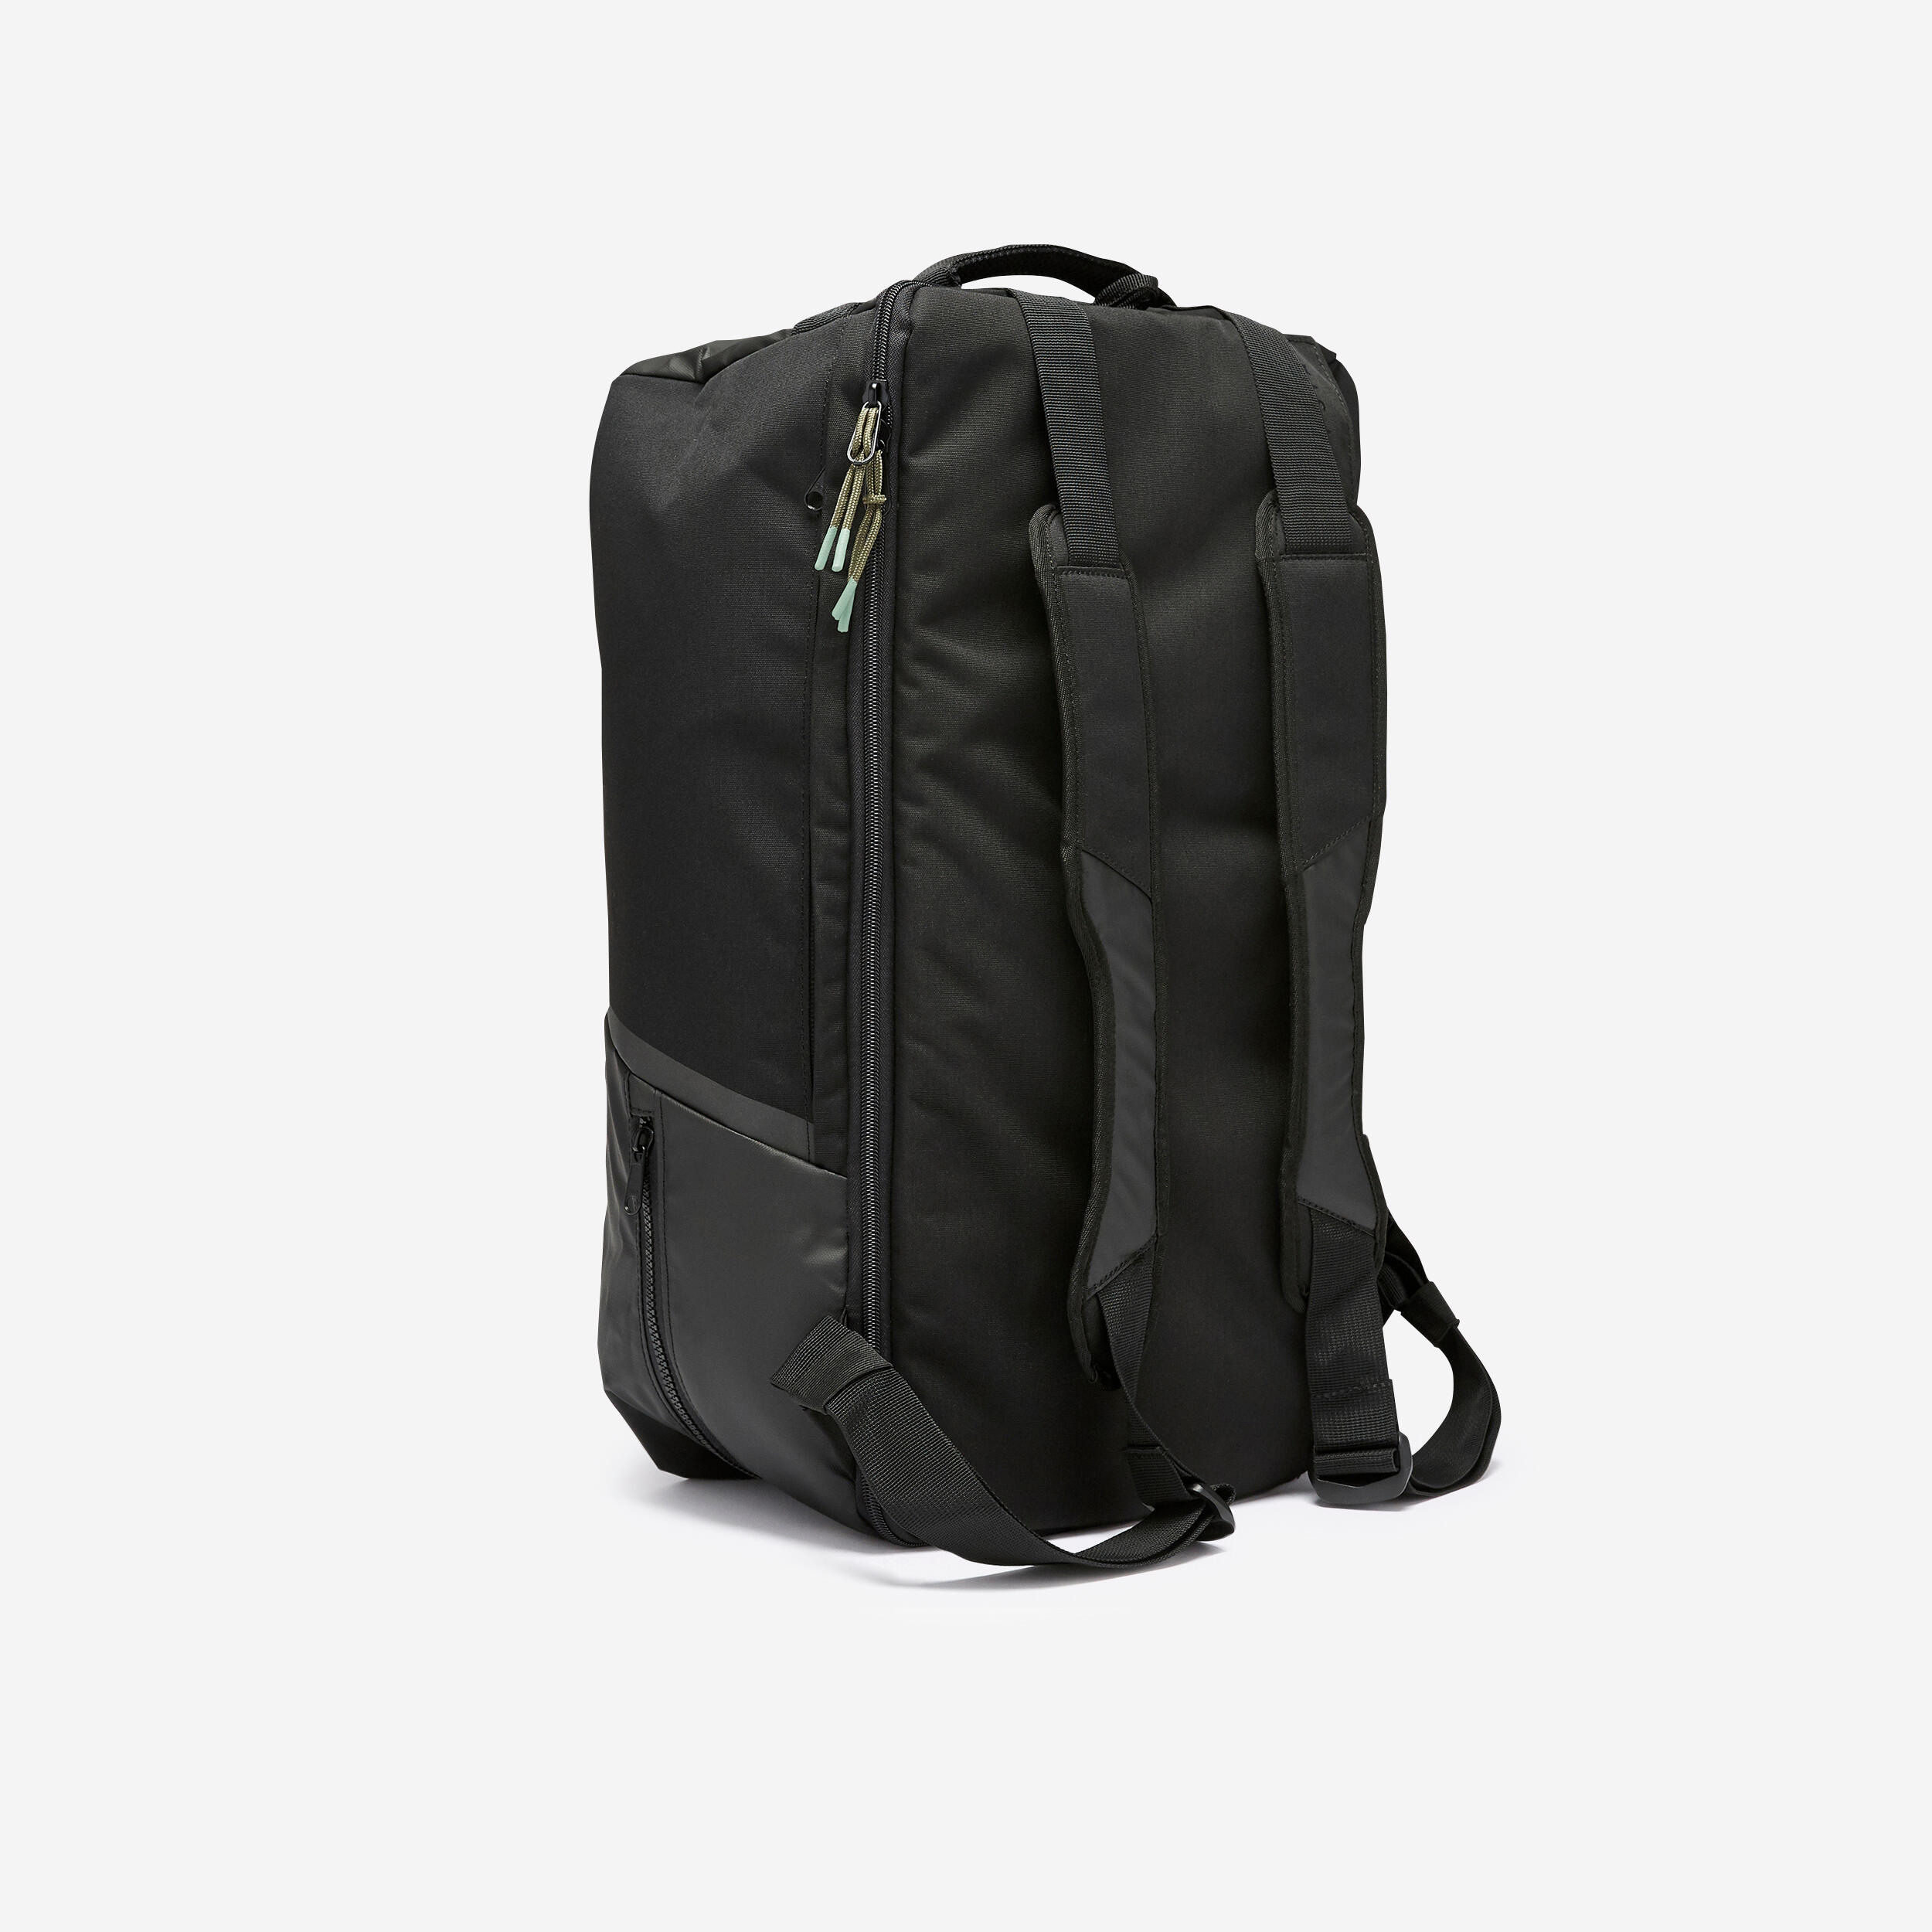 KIPSTA 55L Sports Bag Urban - Black